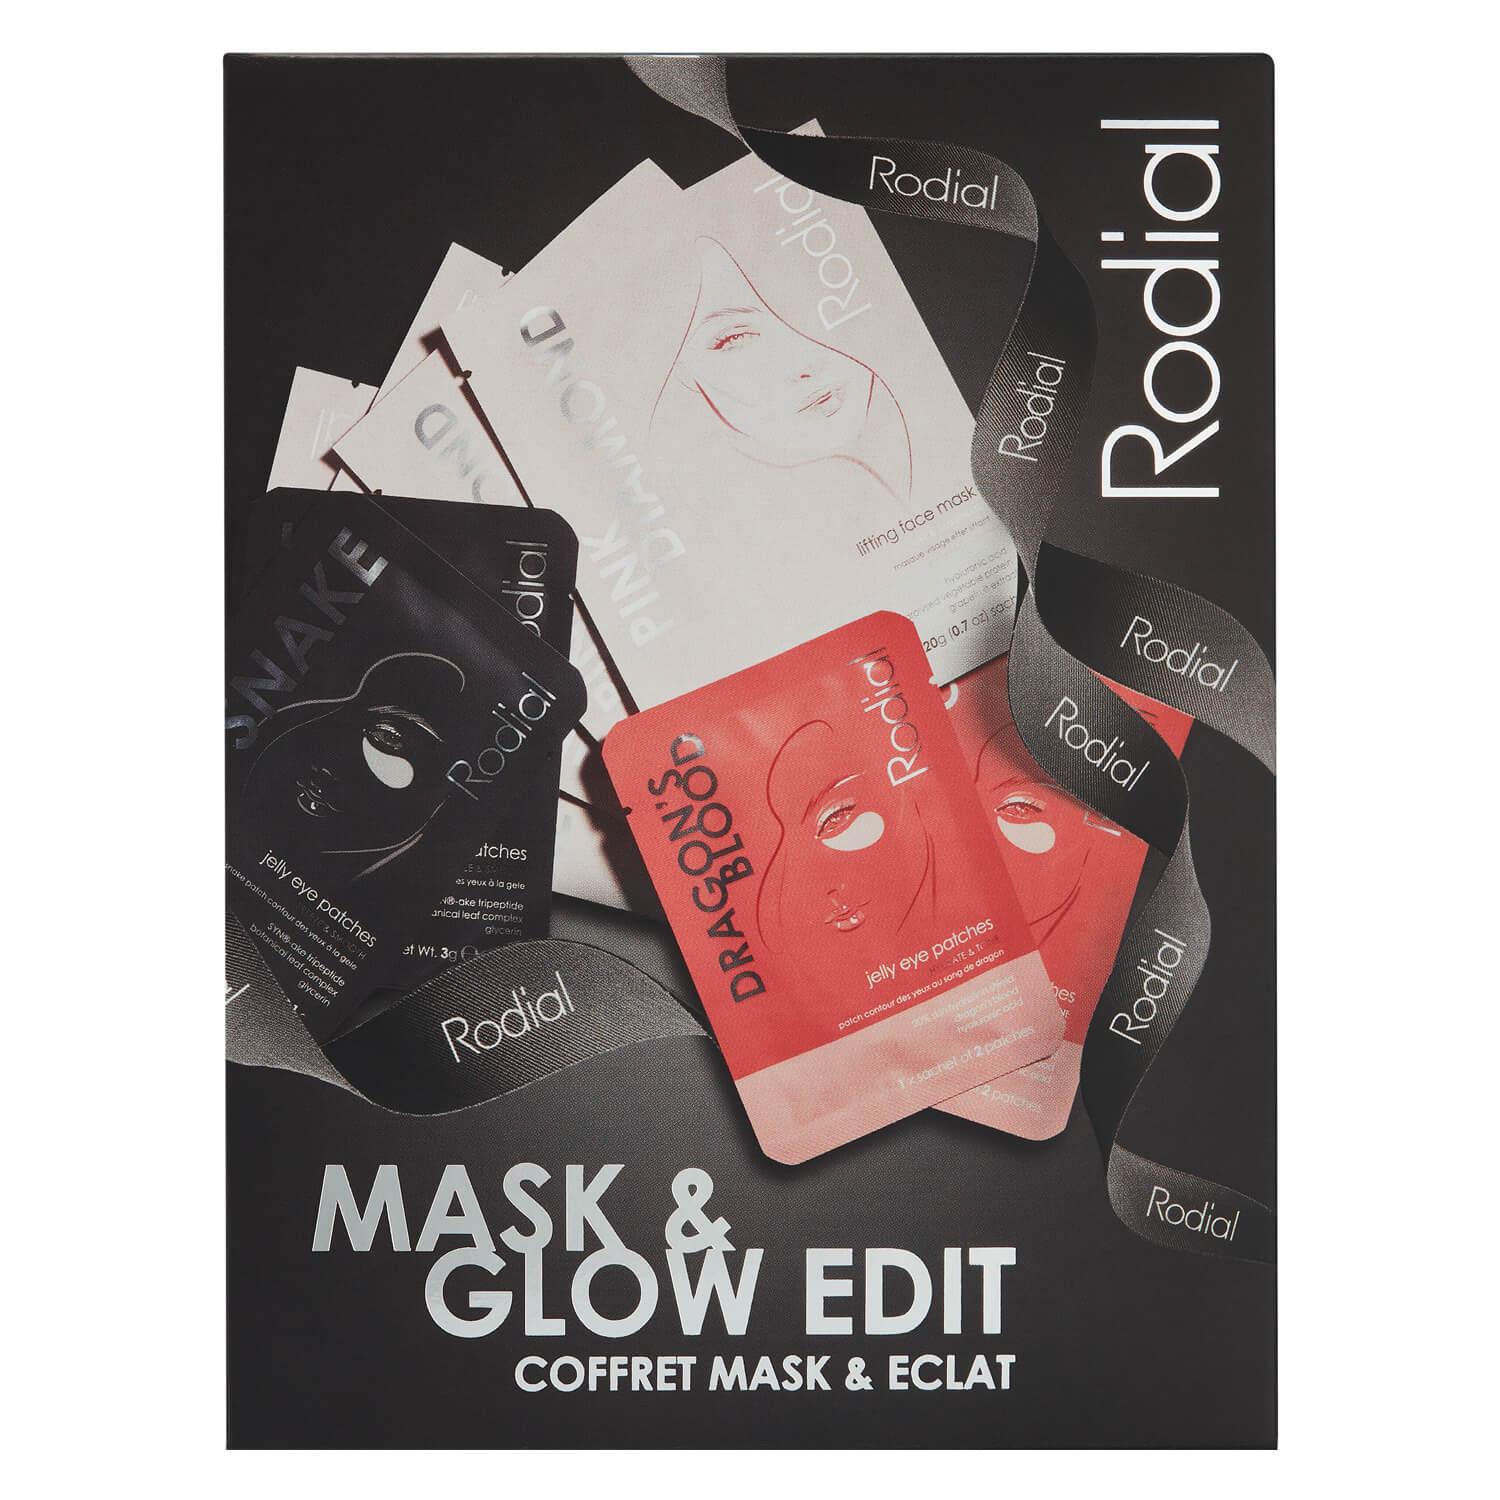 Rodial - Mask & Glow Edit Set